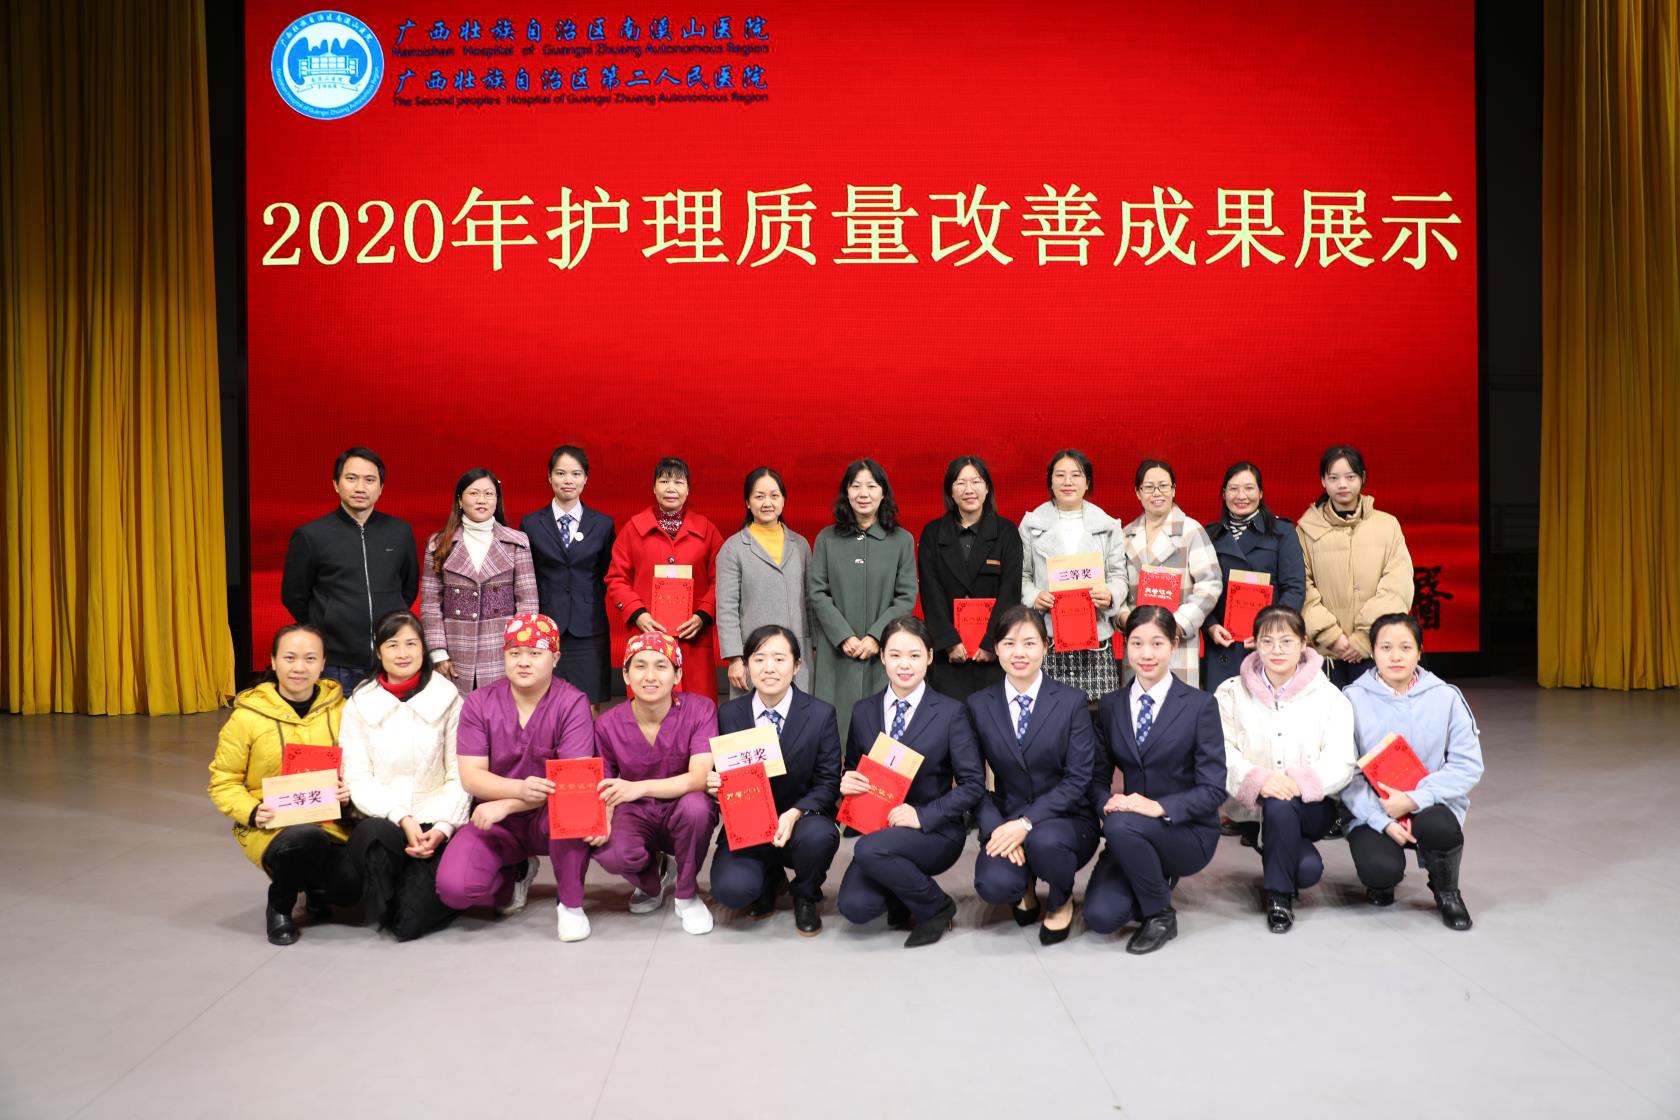 广西壮族自治区南溪山医院举办 2020 年度护理质量改善成果竞赛展示活动